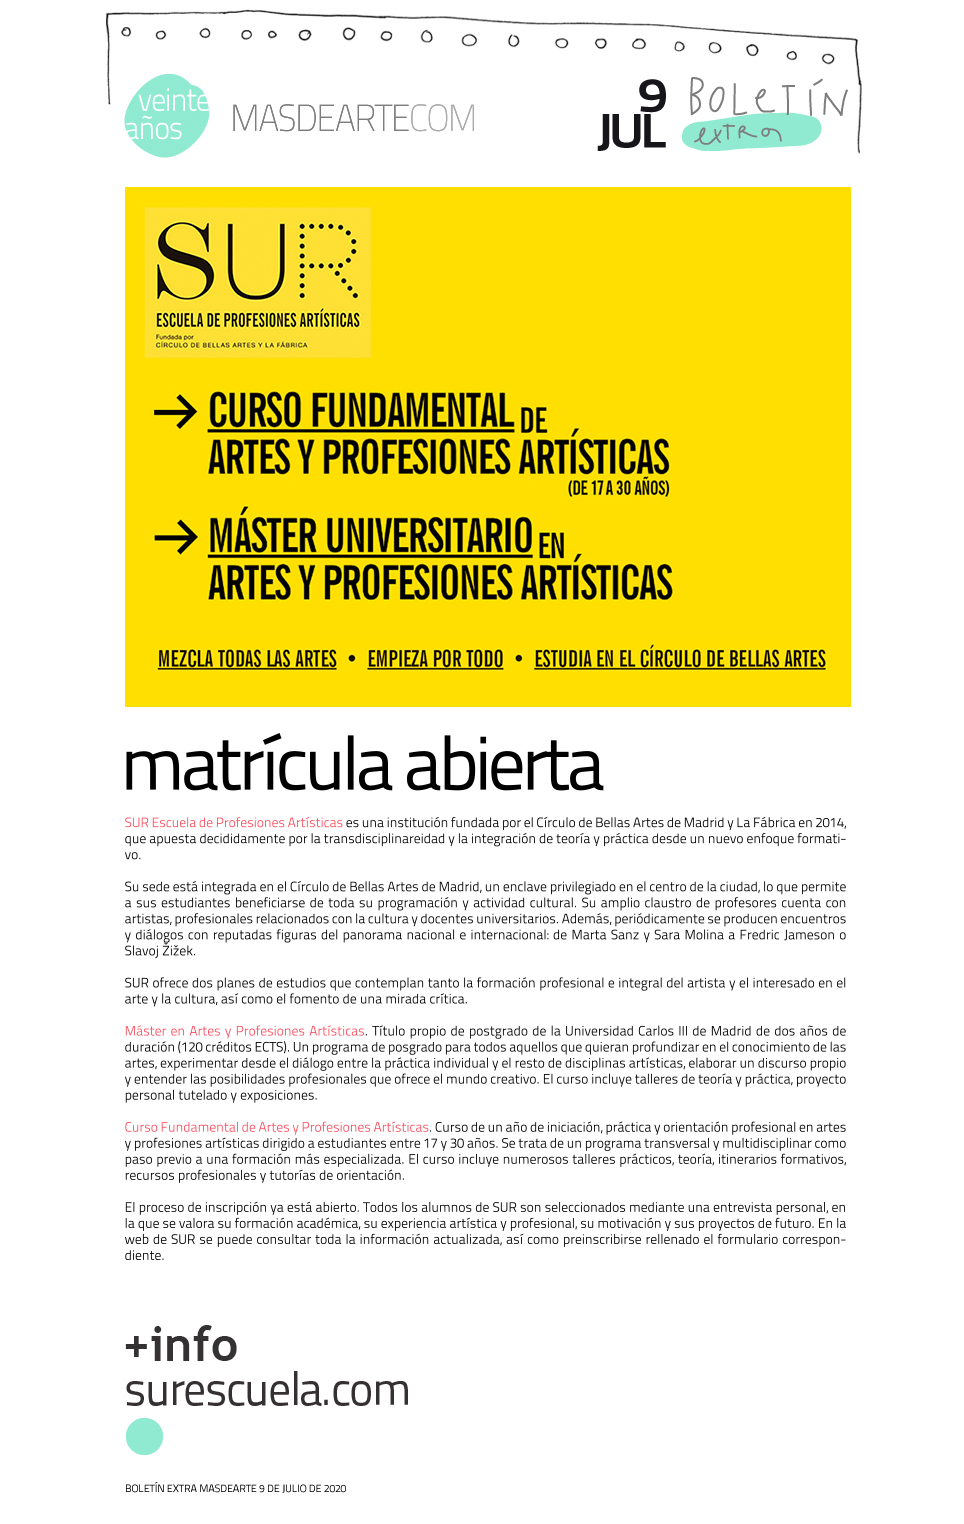 Extra masdearte: Curso Fundamental y Máster Universitario en Artes
 y Profesiones Artísticas. Escuela SUR